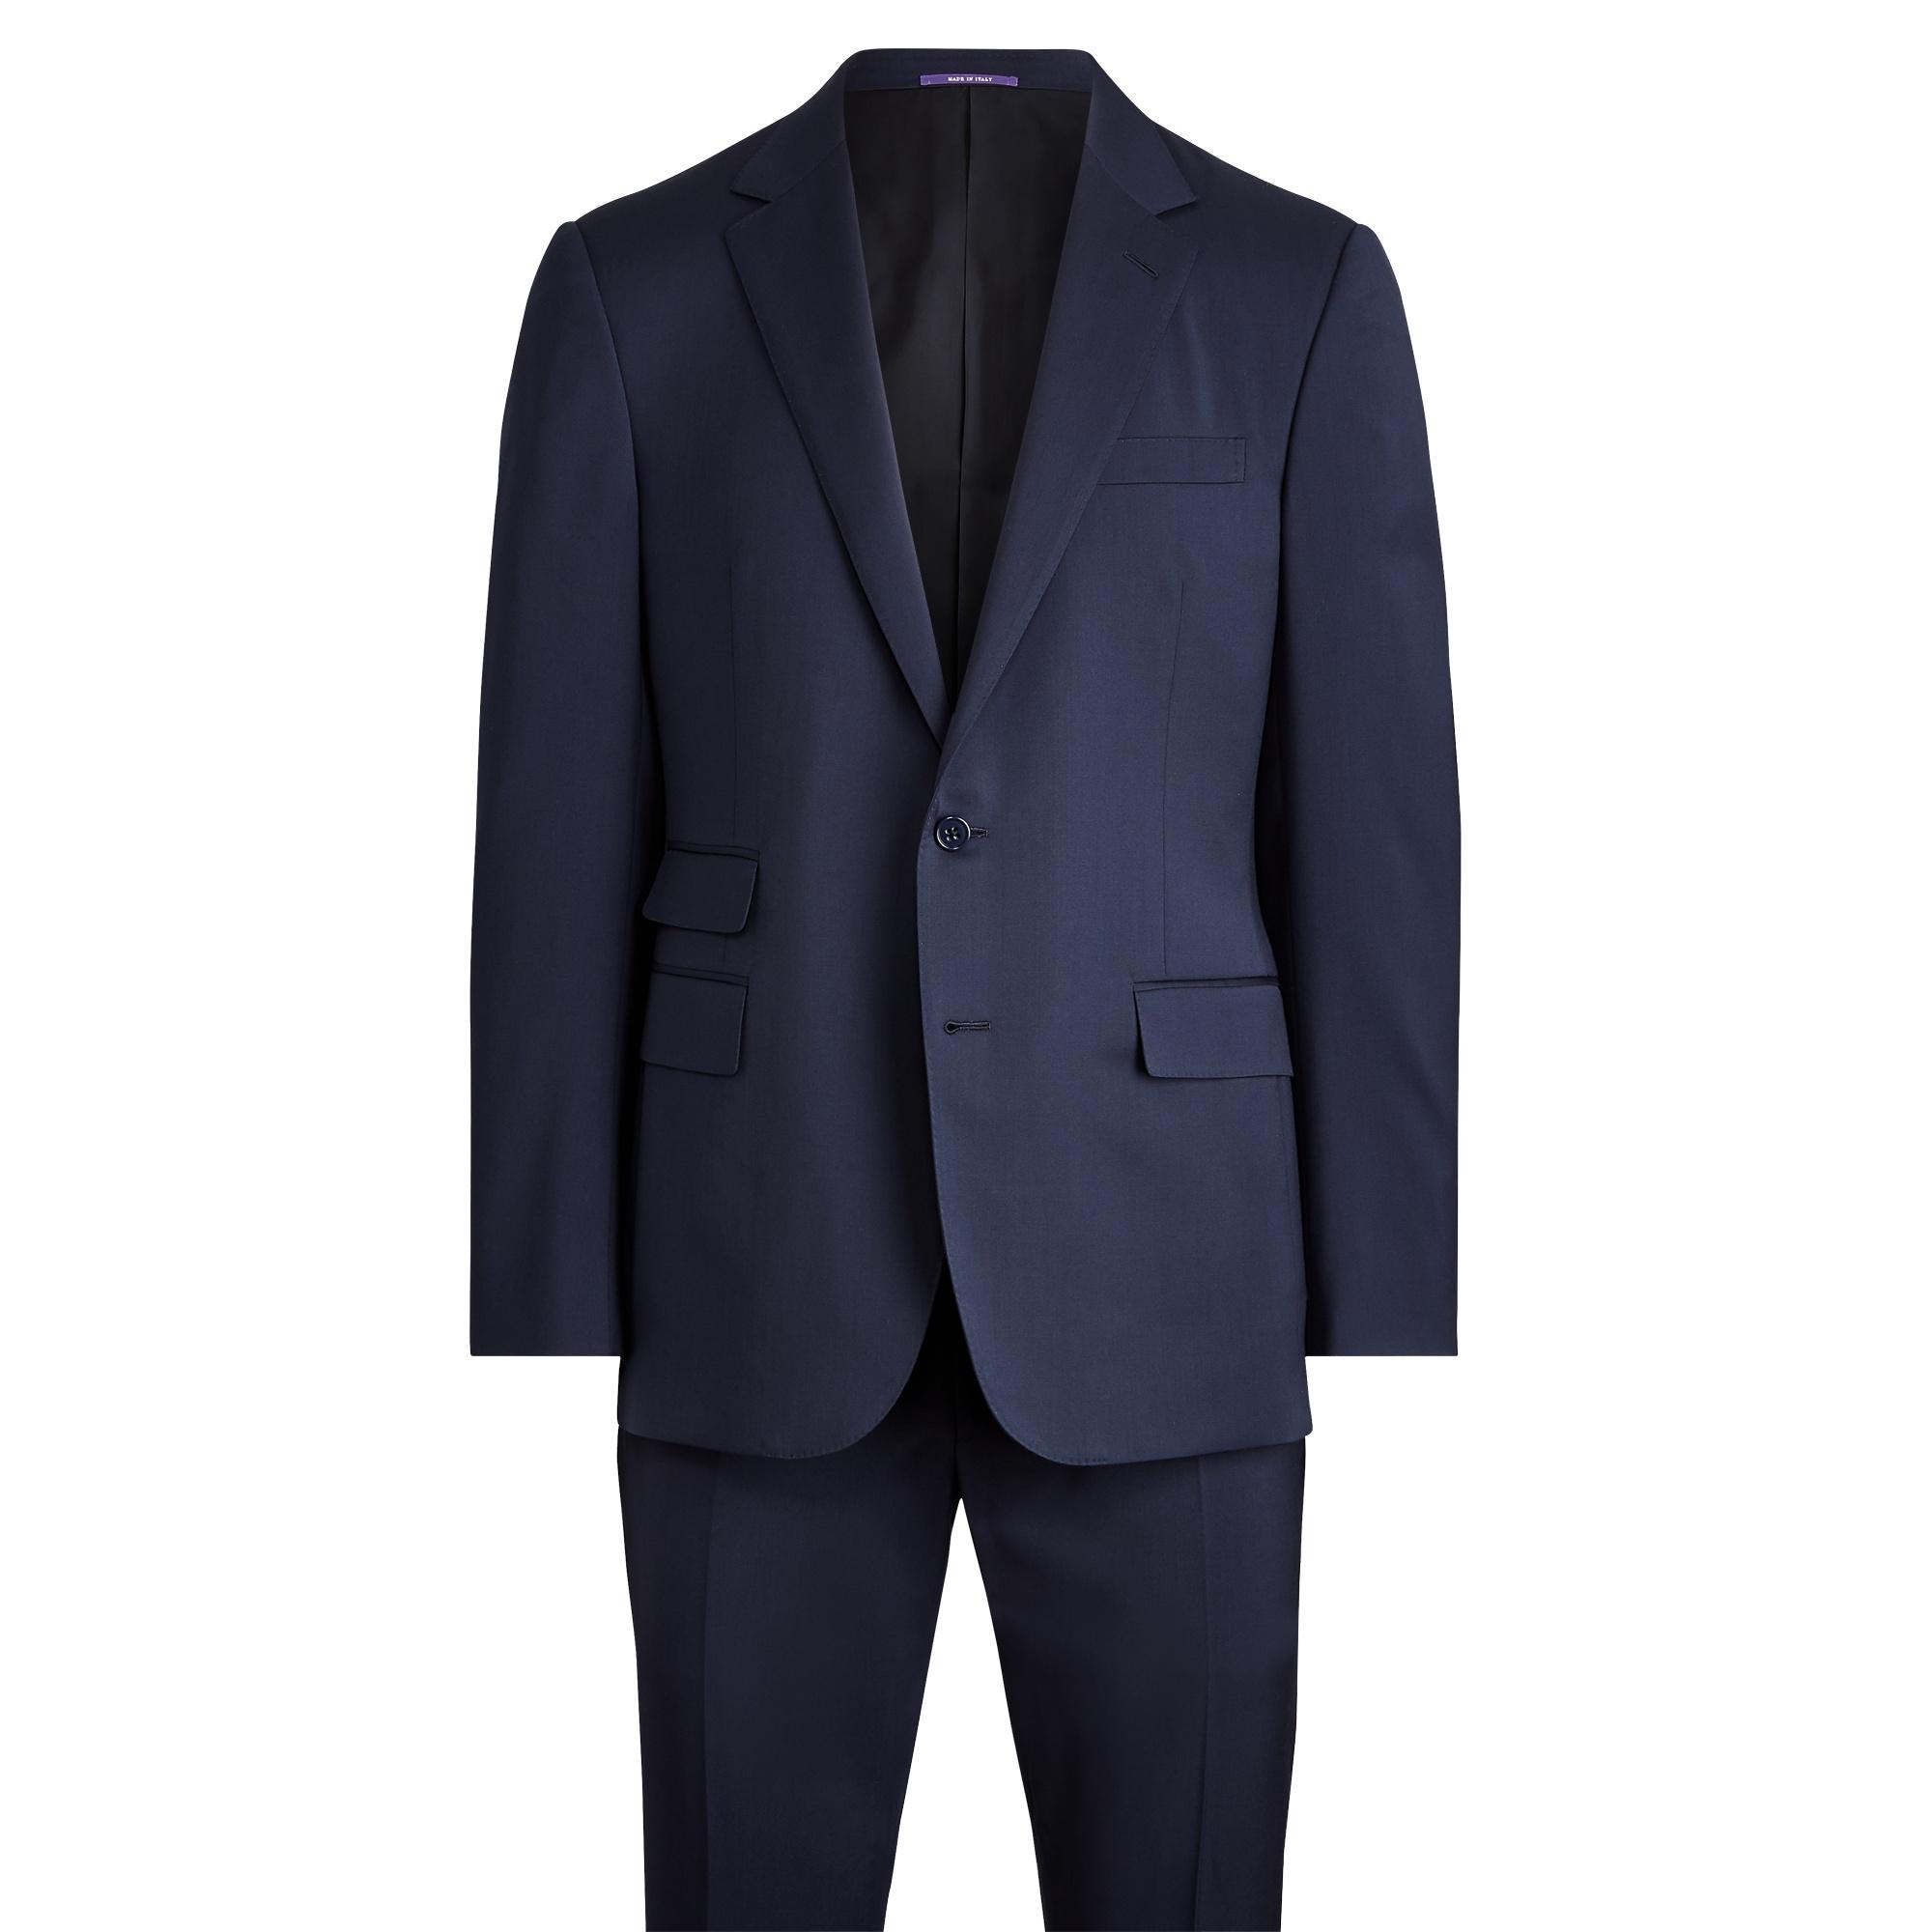 Ralph Lauren Gregory Wool Serge Suit in Blue for Men - Lyst